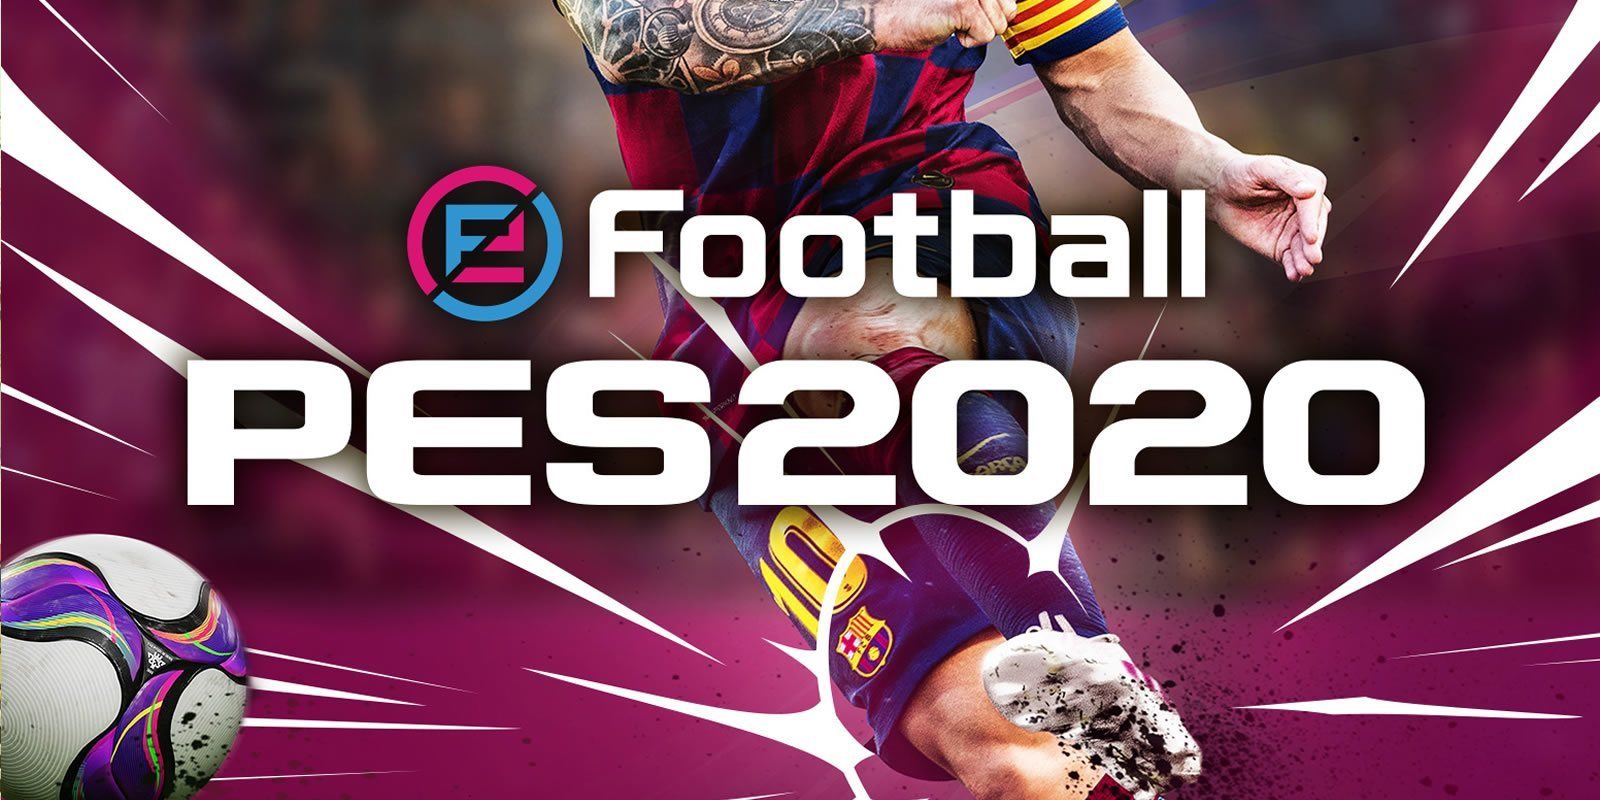 Se anuncia 'PES 2020' con Messi en su portada